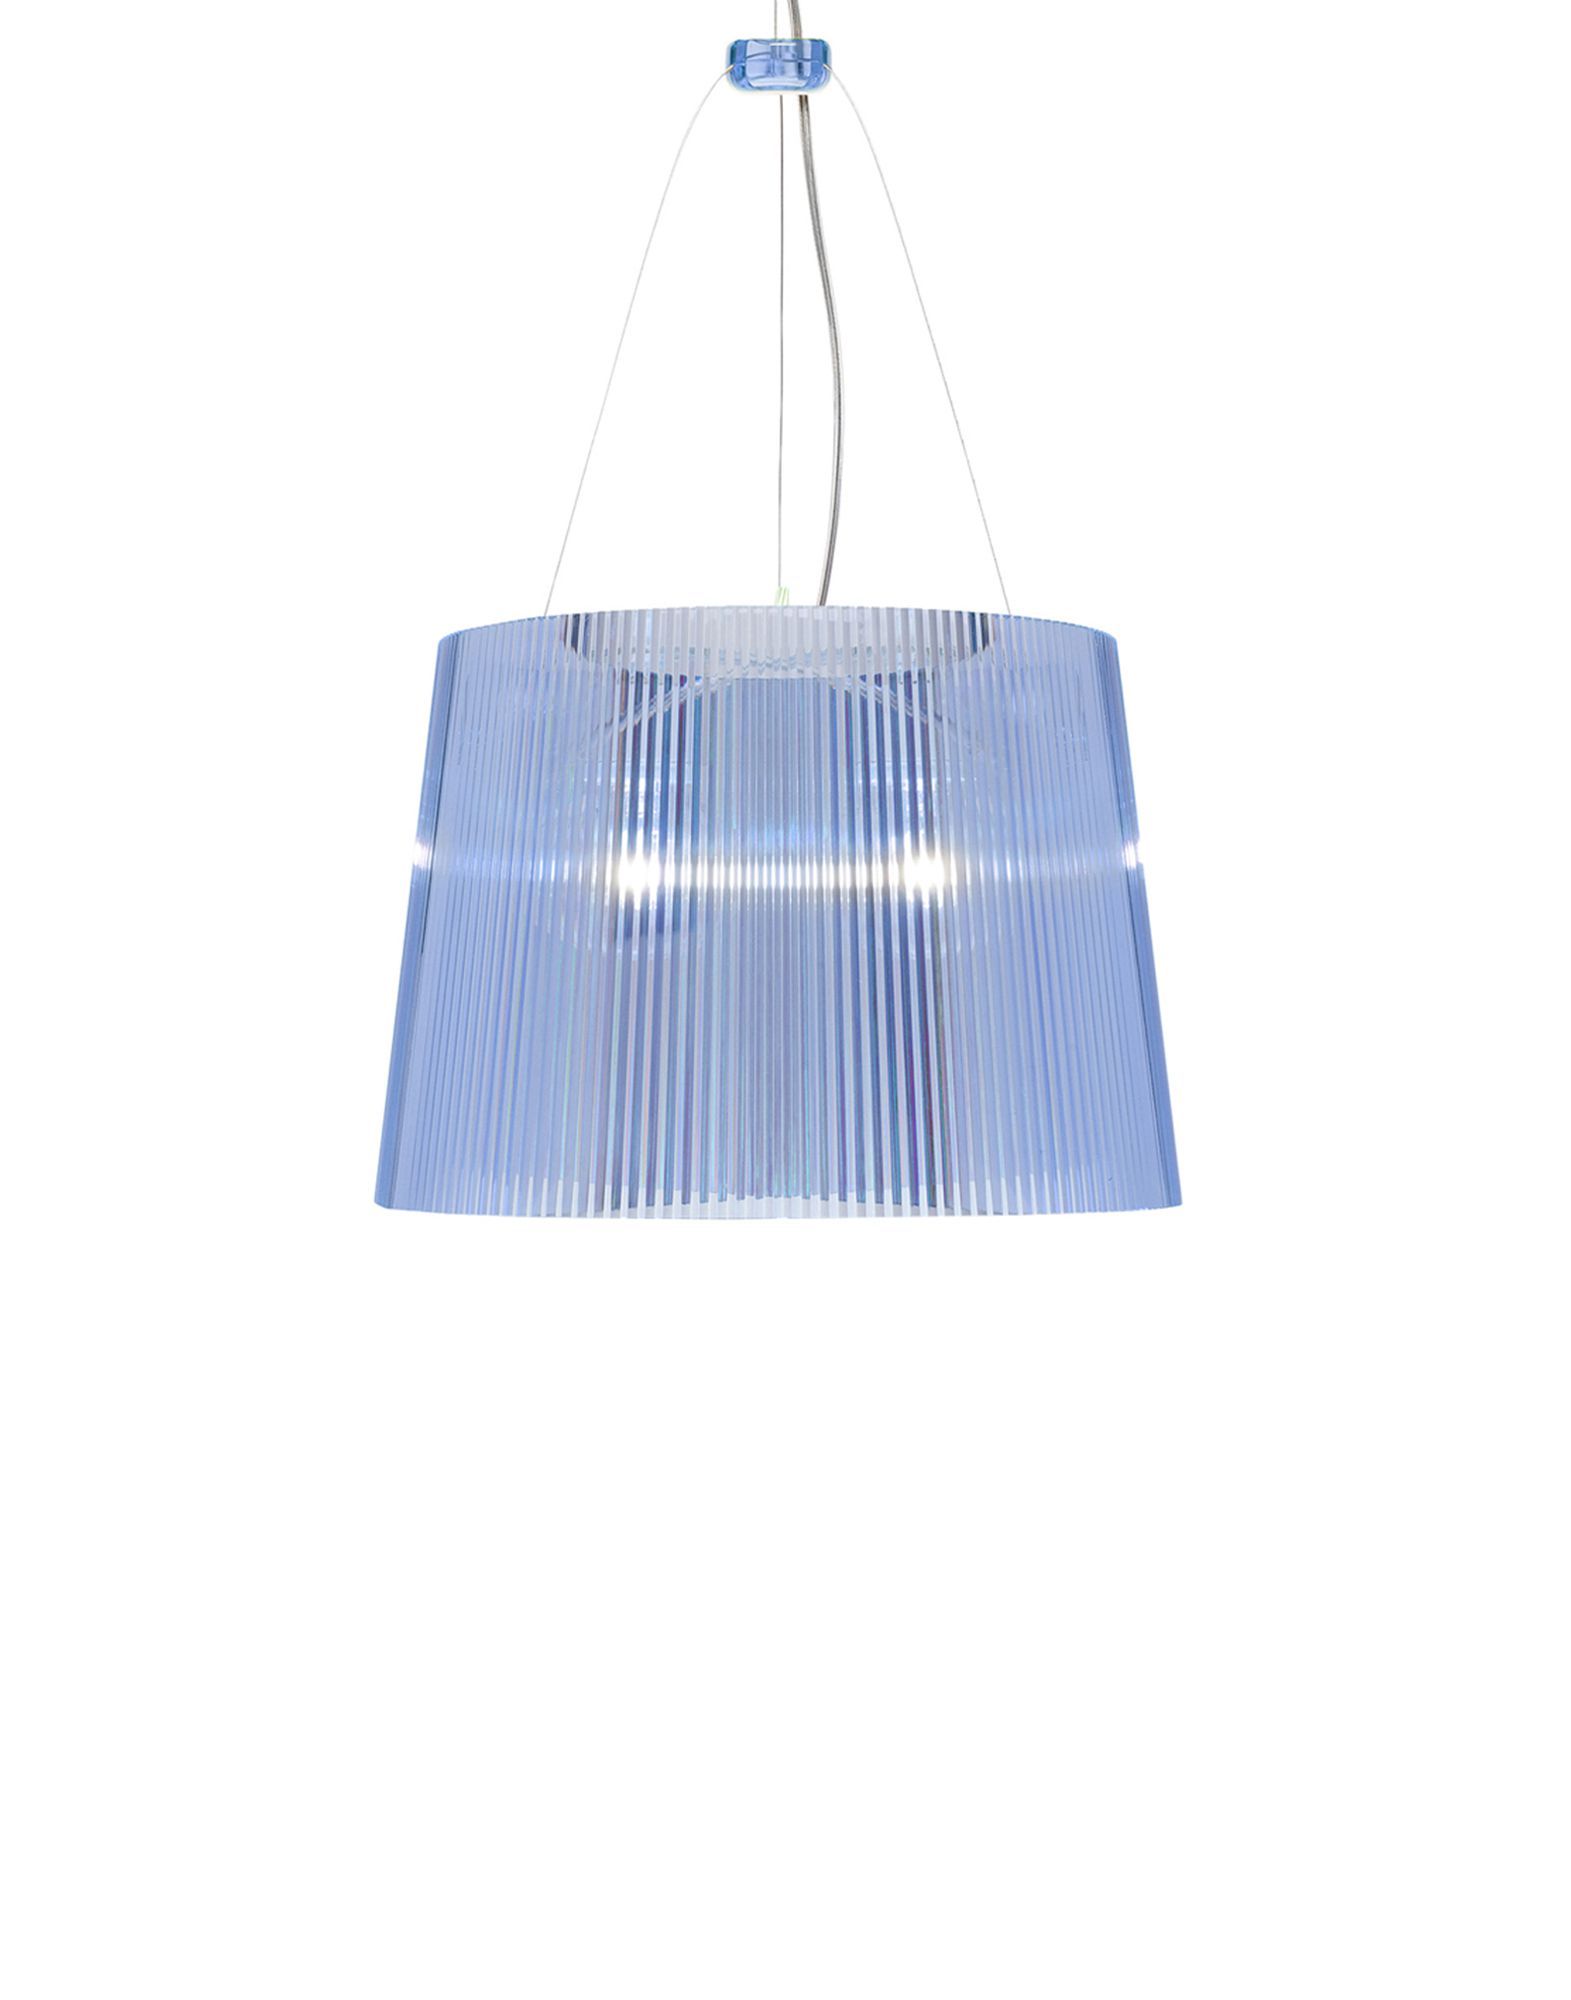 Suspensie Kartell Ge’ design Ferruccio Laviani E27 max 70W h37cm bleu transparent Kartell imagine reduss.ro 2022